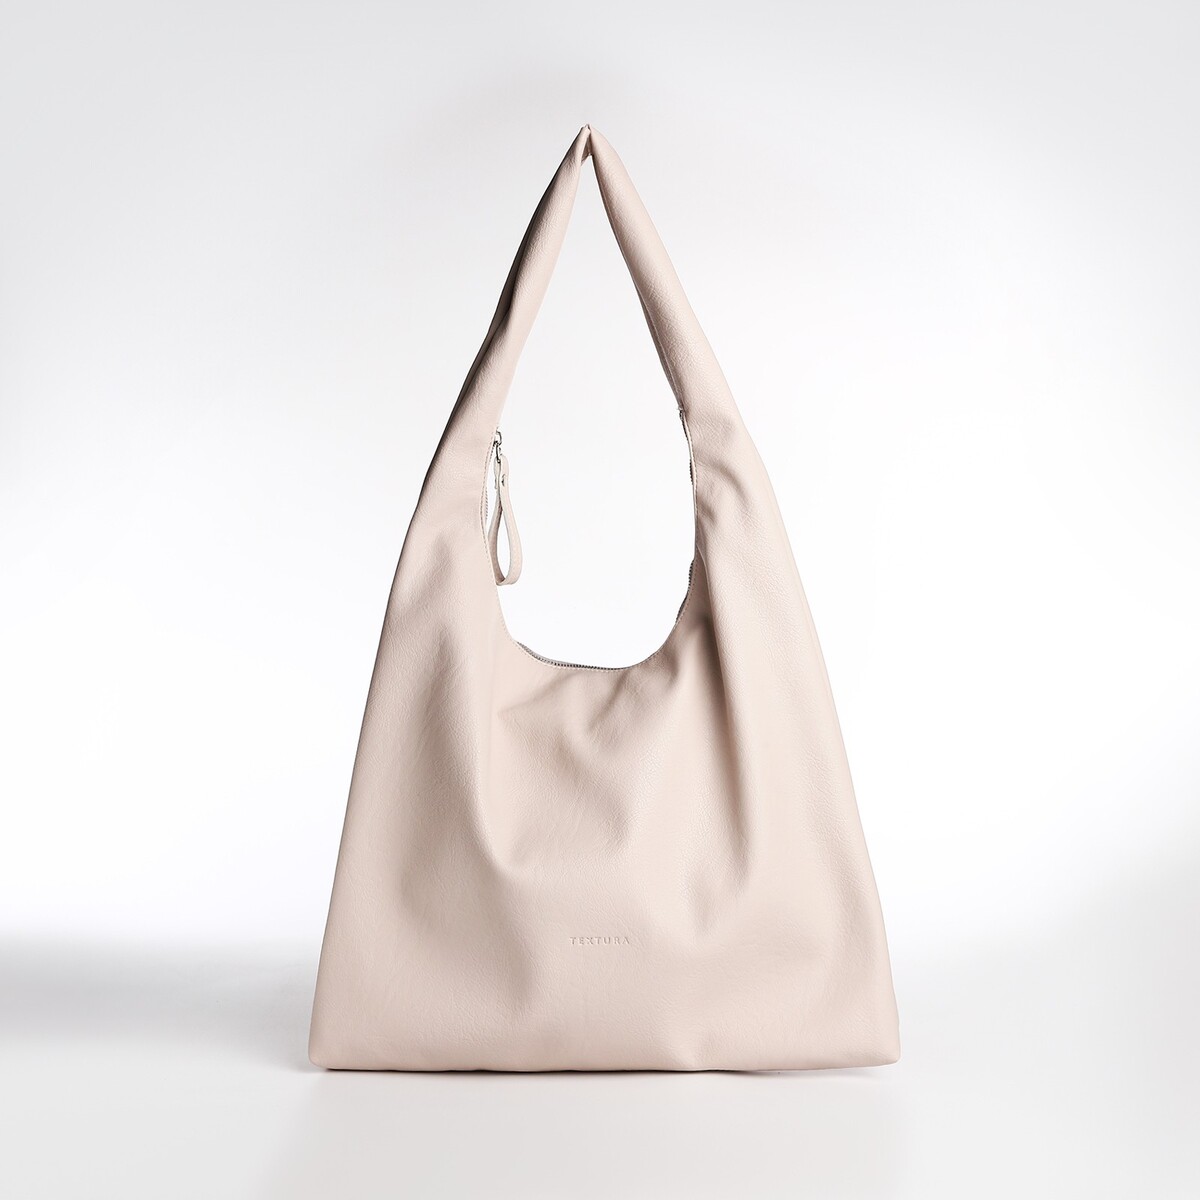 Сумка женская textura, мешок, большой размер, цвет бежевый сумка женская textura мешок большой размер коричневый